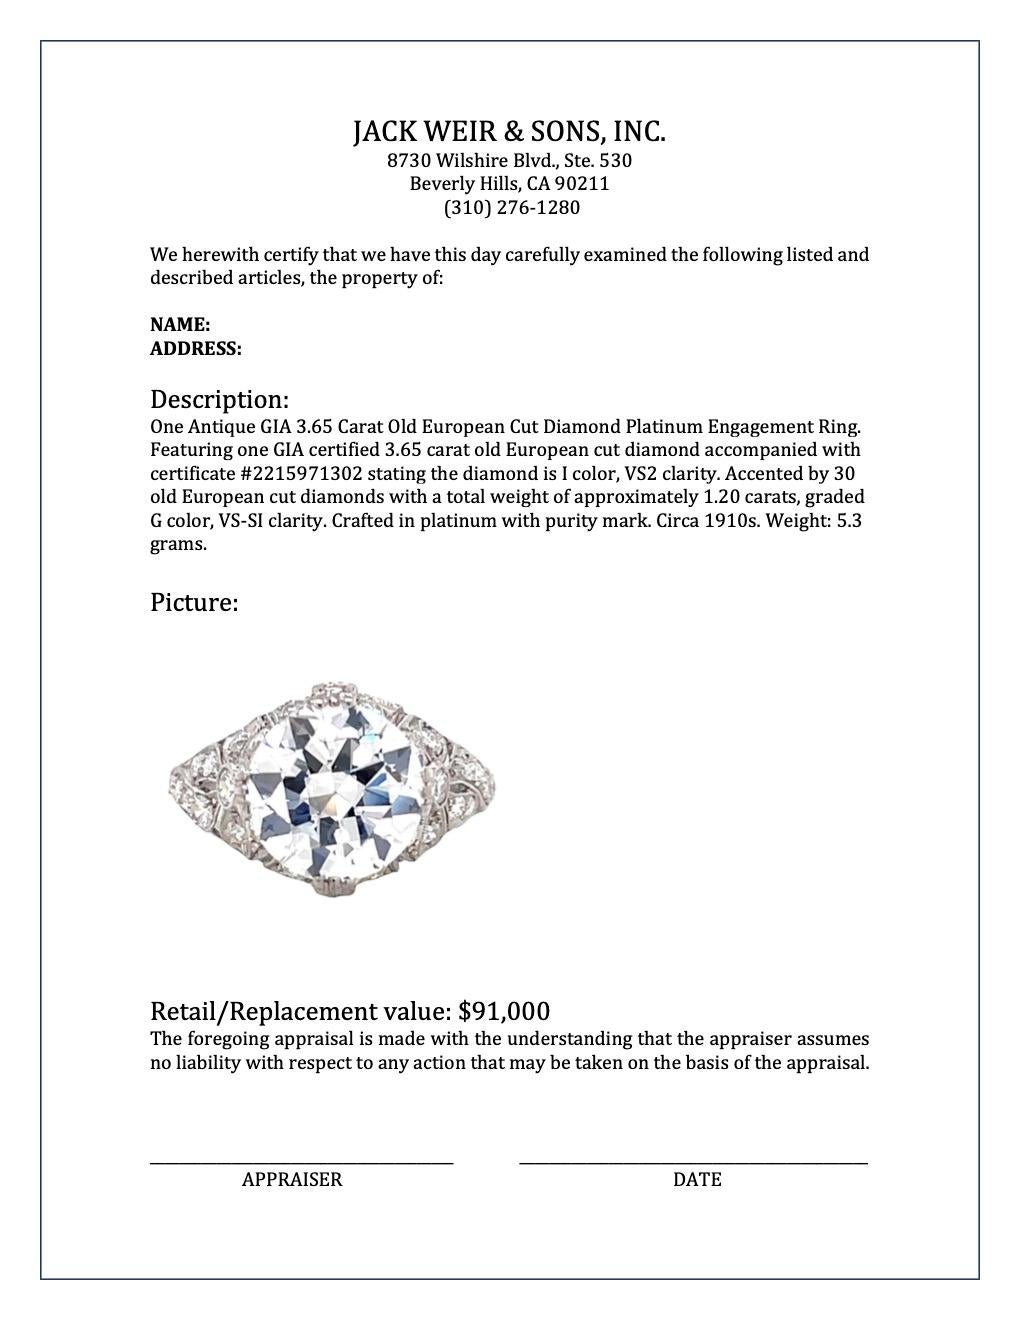 Antique GIA 3.65 Carat Old European Cut Diamond Platinum Engagement Ring 3